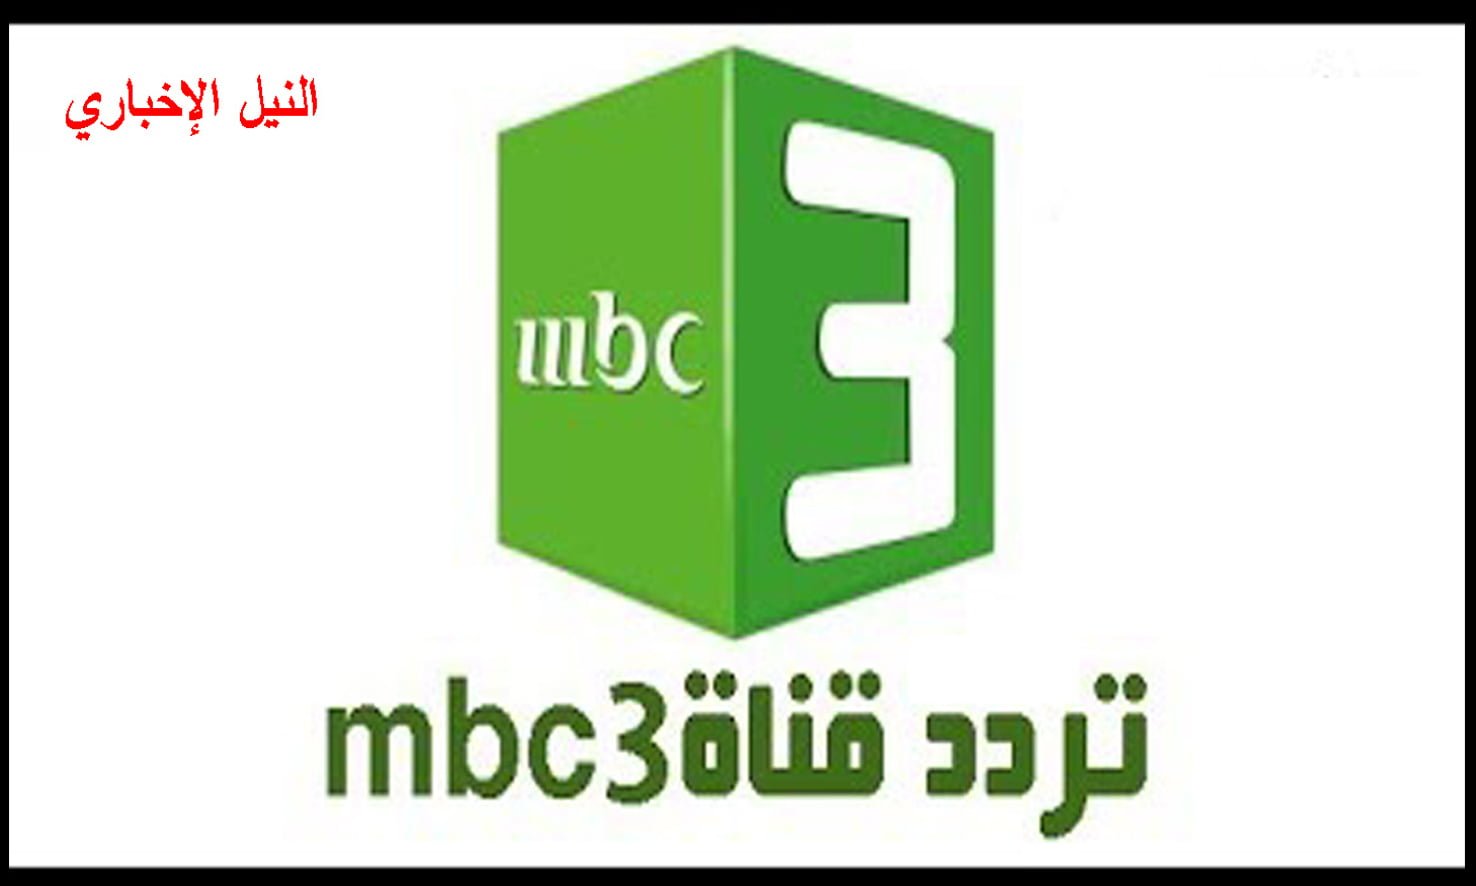 تردد قناة إم بي سي 3 (MBC3) المخصصة للأطفال وأهم ما تقدمه من برامج وأفلام كرتونية